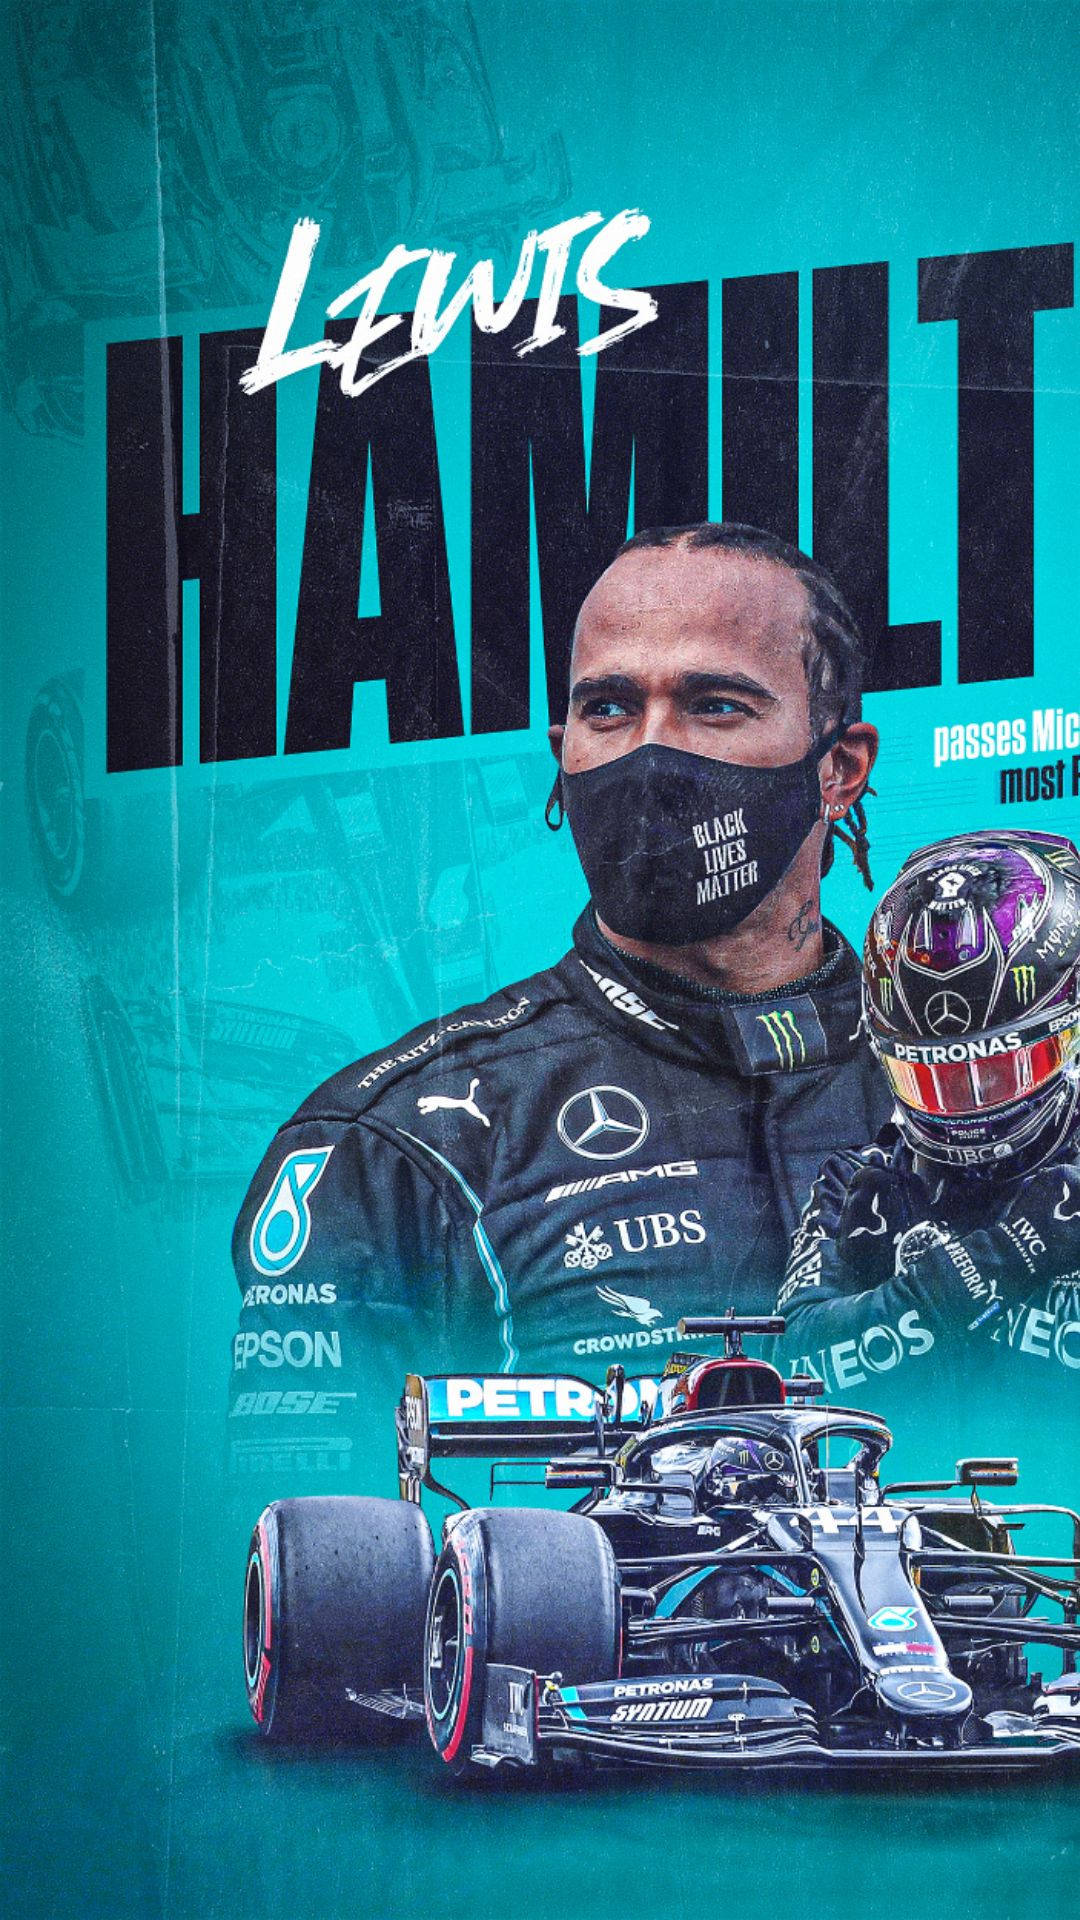 Lewis Hamilton krydser målstregen i en historisk sejr ved 2019 F1 britiske Grand Prix Wallpaper